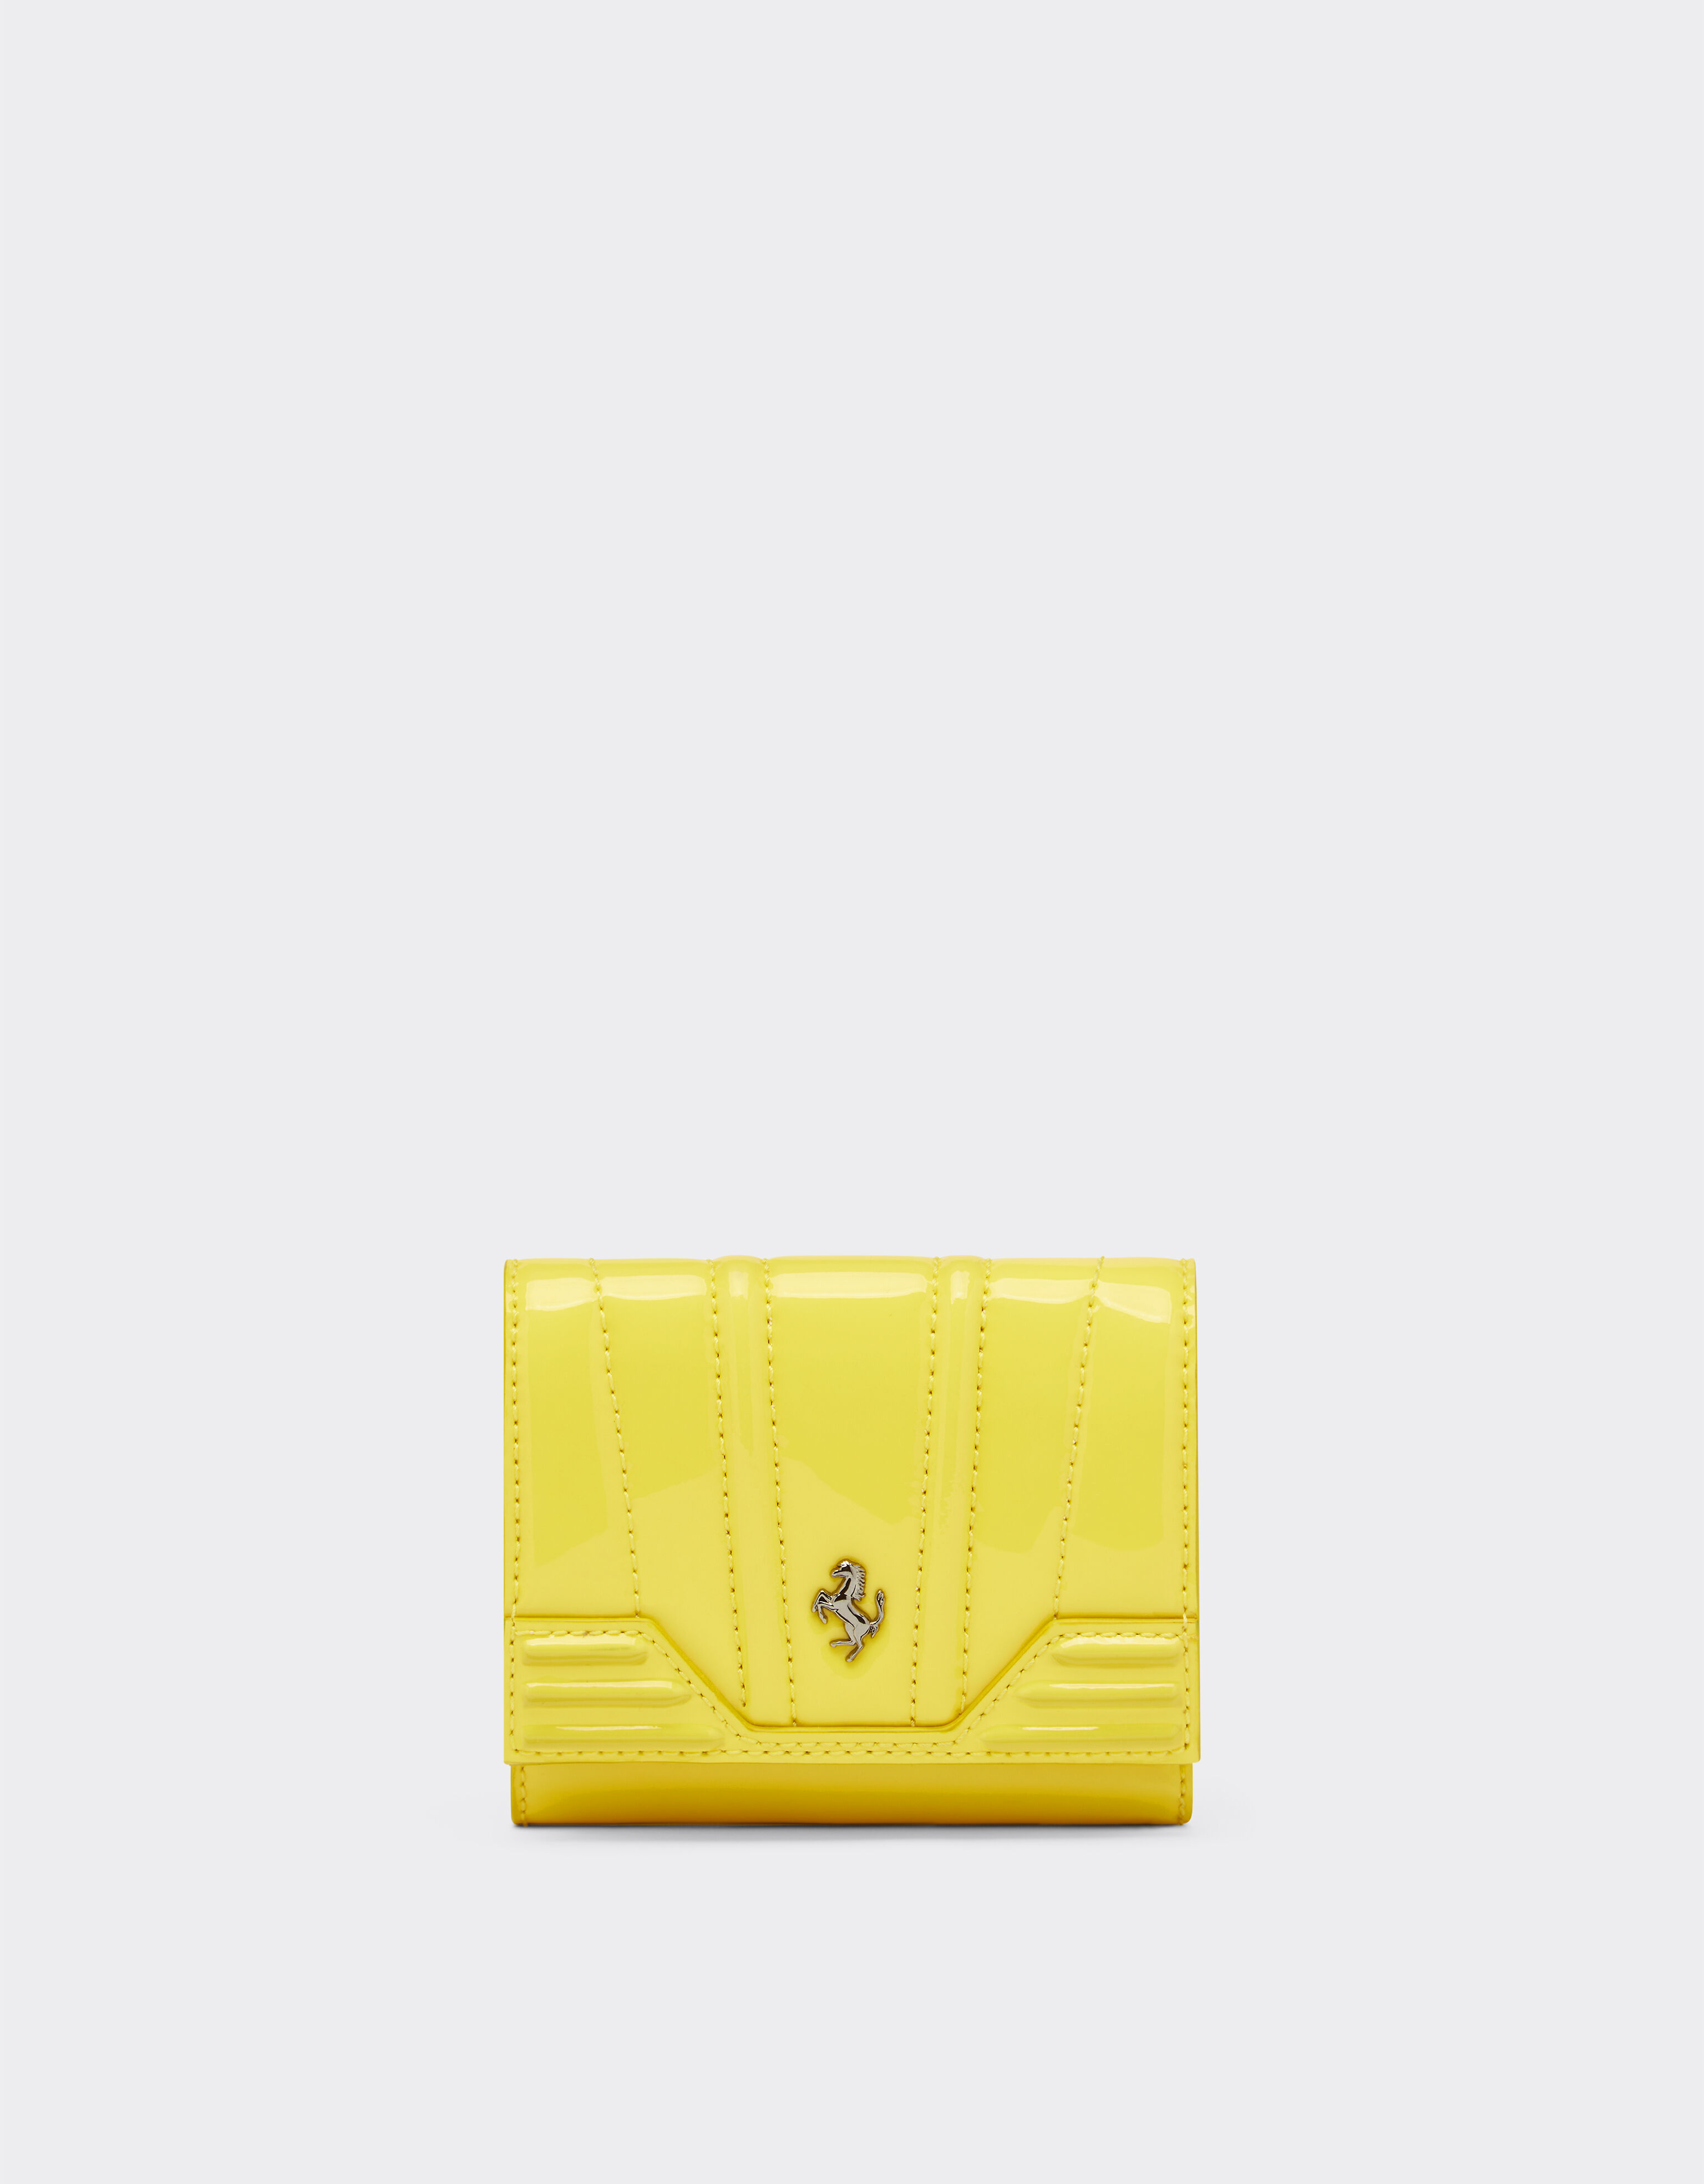 Ferrari Portemonnaie aus glänzendem Lackleder, dreifach faltbar Giallo Modena 20426f